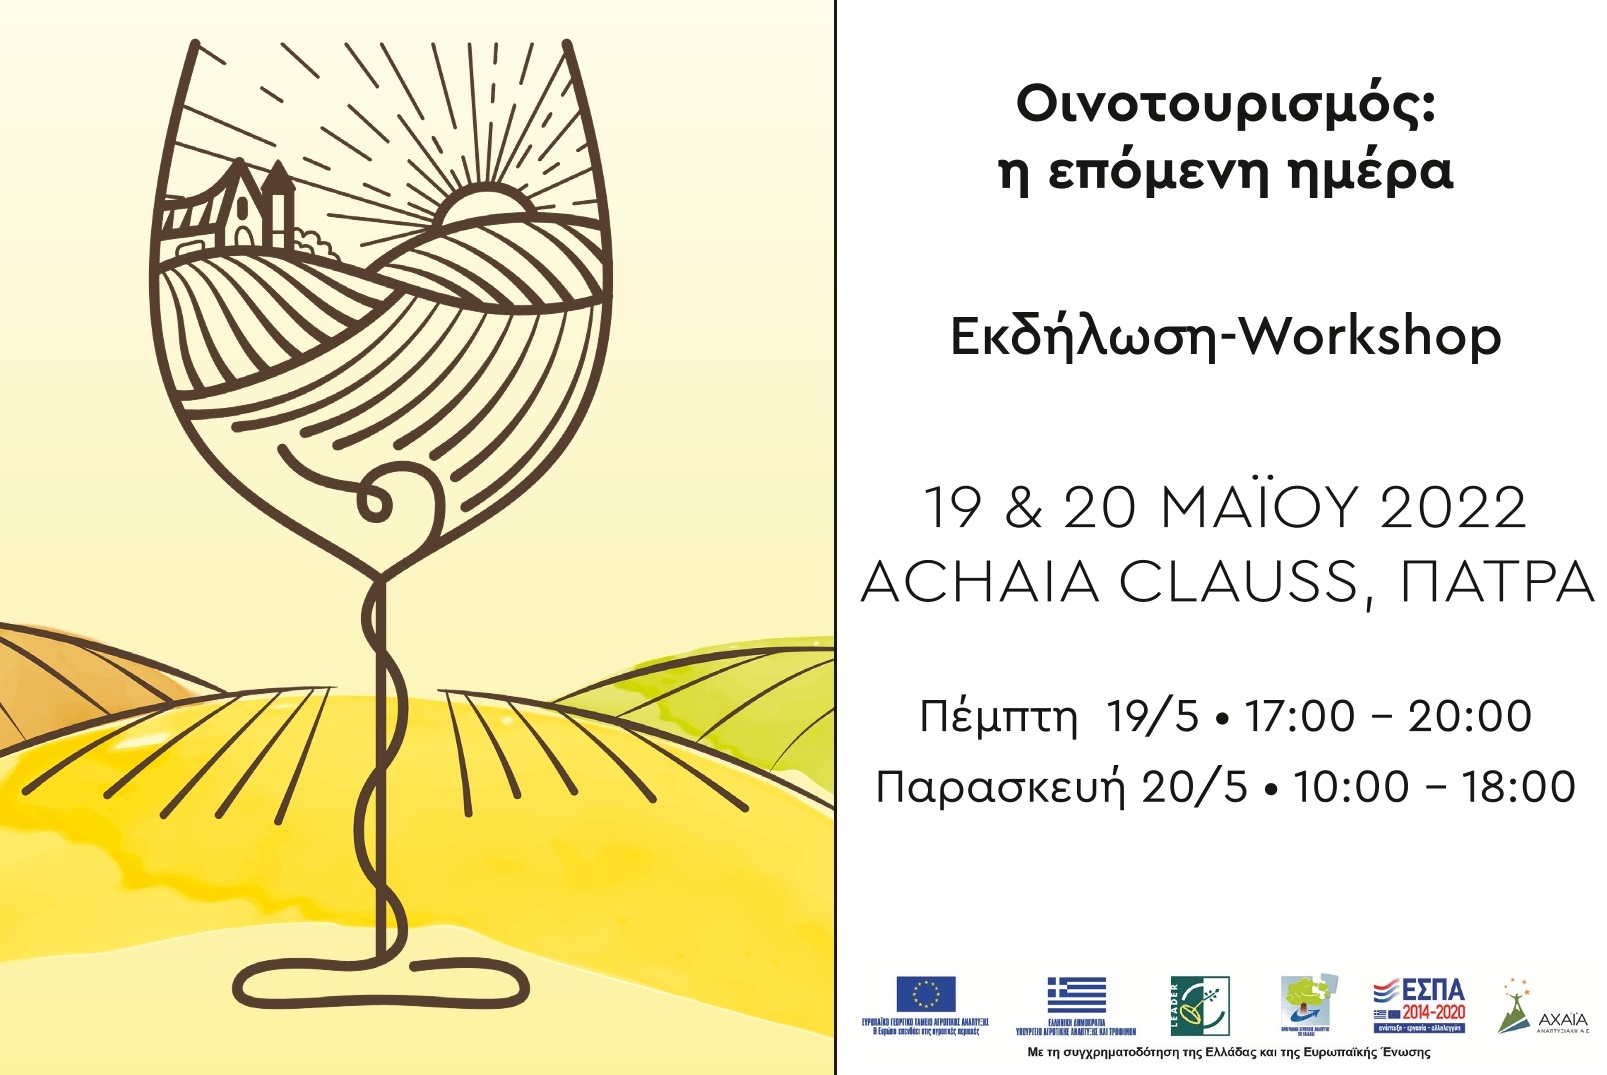 oinotourismos-i-epomeni-mera-ekdilosi-workshop-stin-achaia-clauss-stis-19-kai-20-maiou-262532